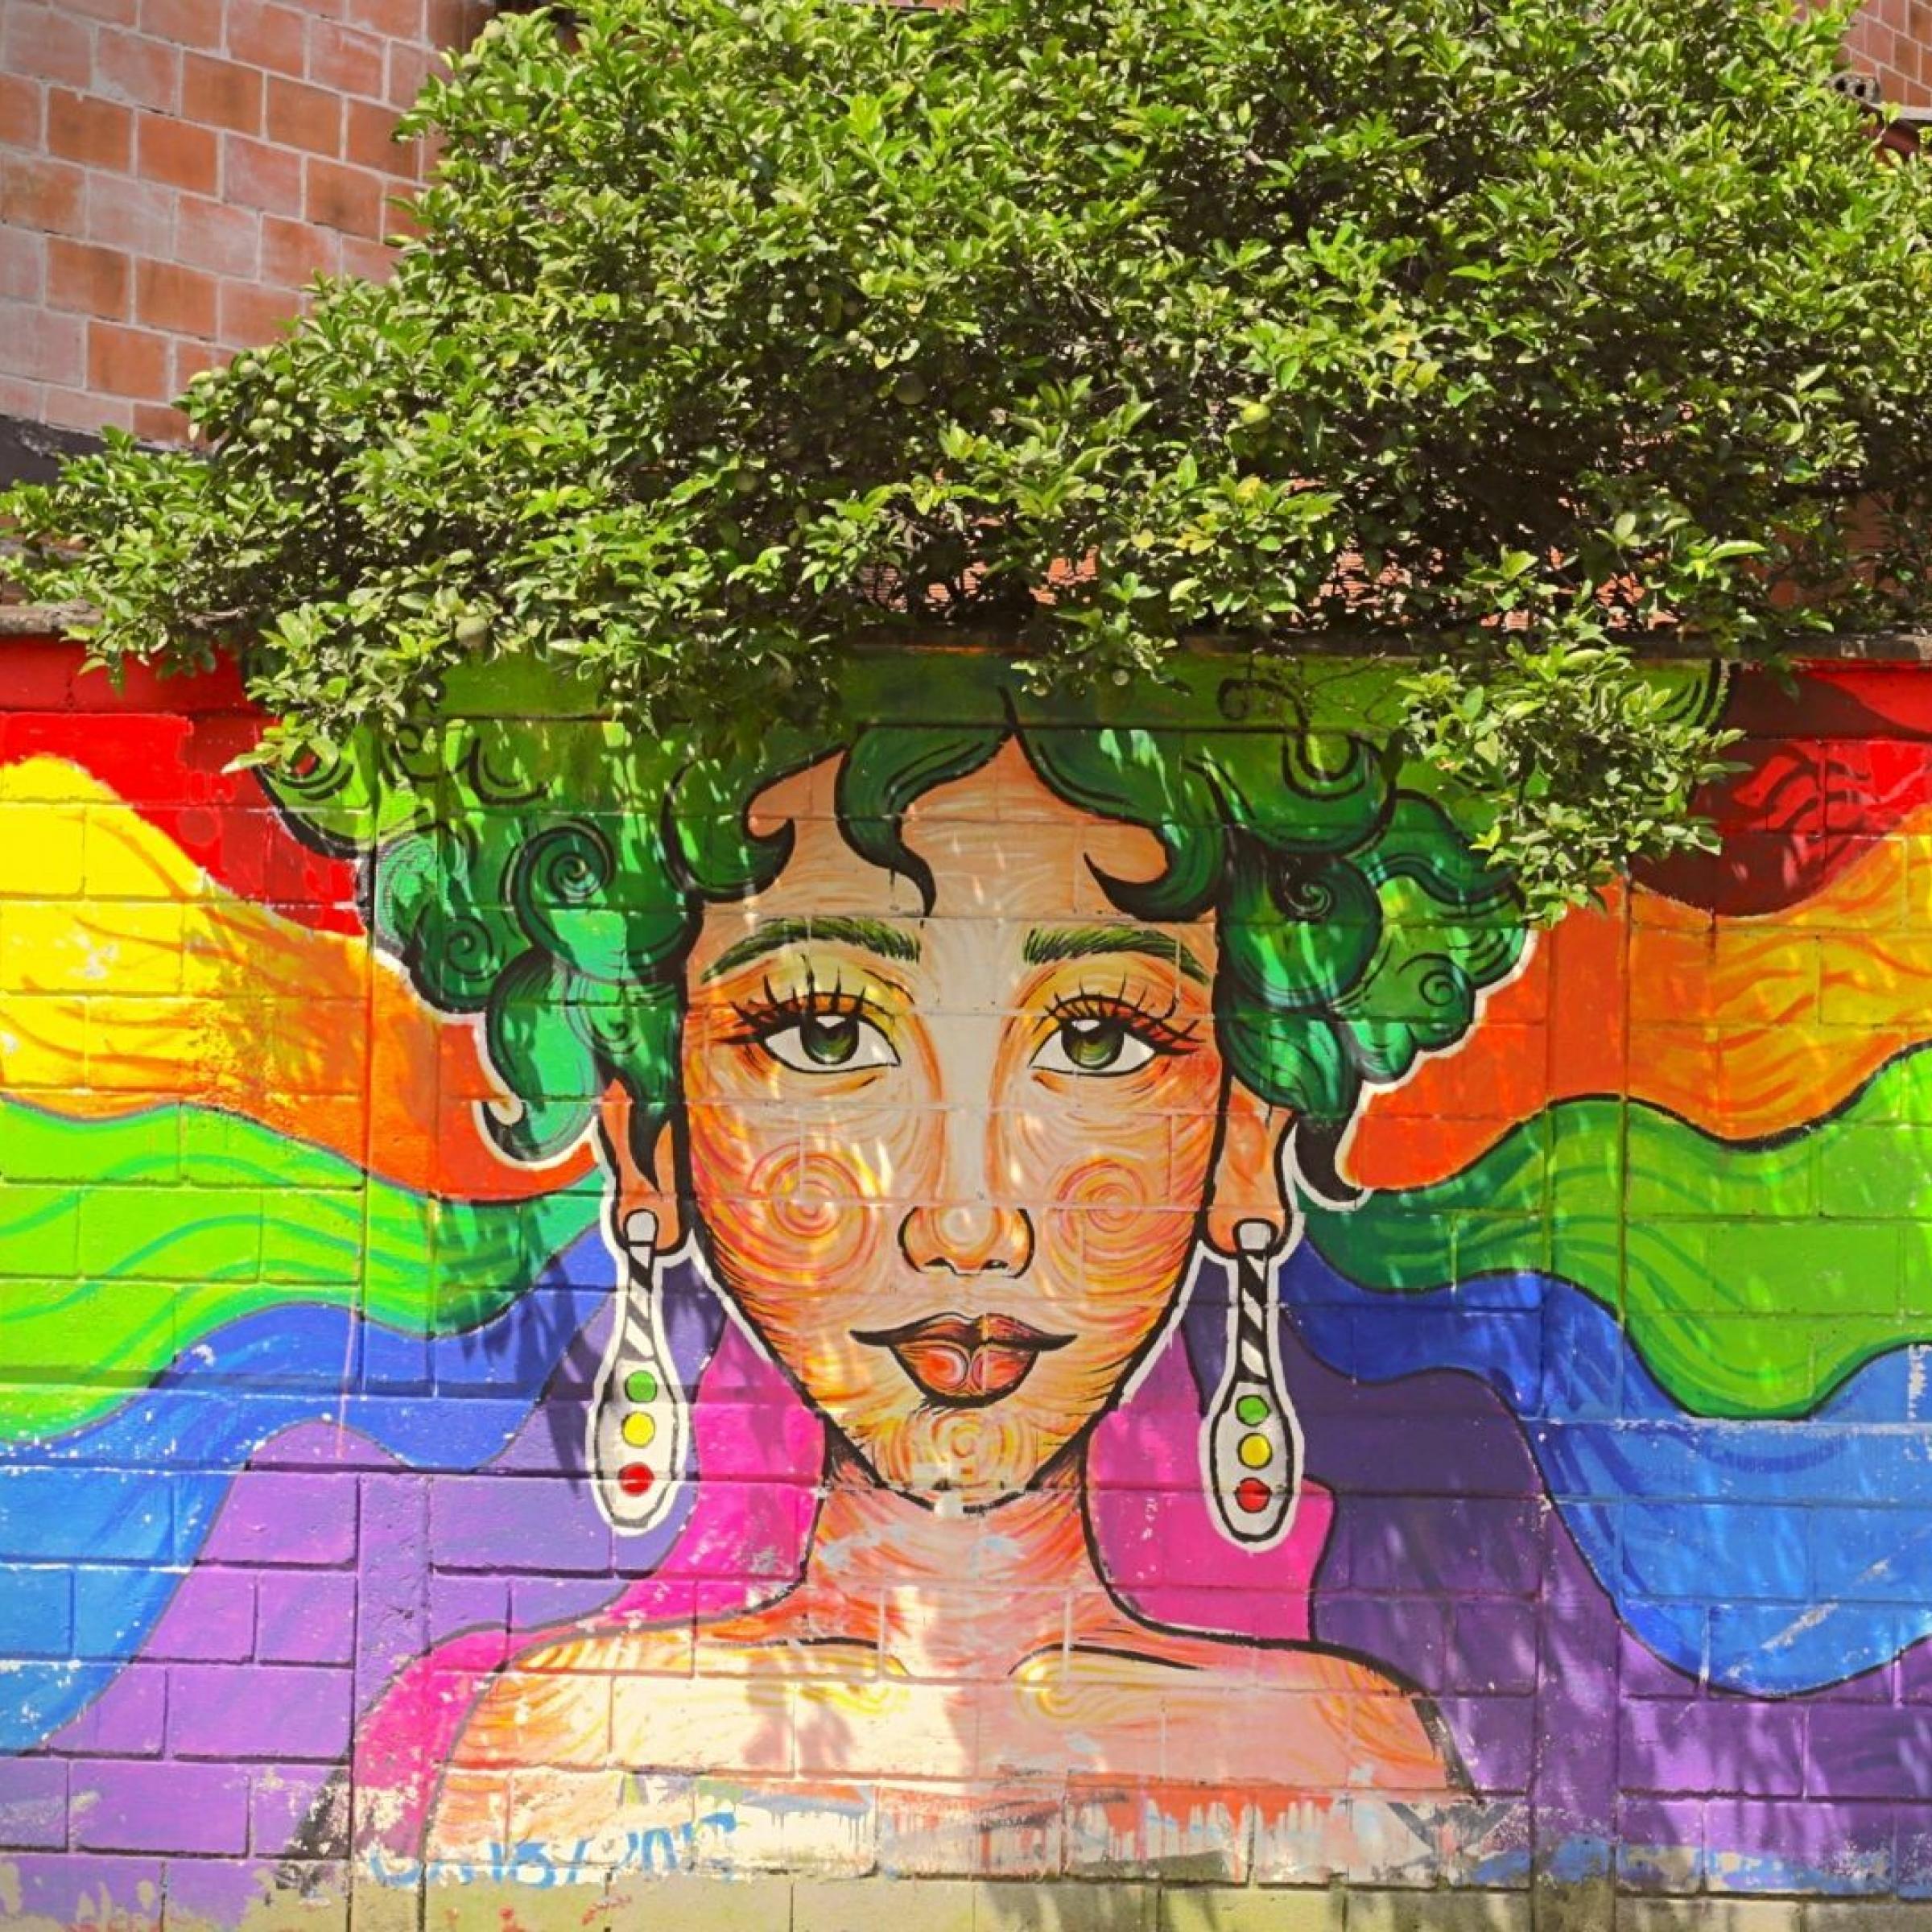 Das Foto zeigt eine Mauer mit einem gemalten Frauenkopf. Die Frau hat grüne Haare. Wo die Haare der Frau auf der Mauer enden, gehen sie in die Krone eines Baumes über, der hinter der Mauer steht. Die Frau sieht aus, als ob sie einen riesigen grünen Baum-Afro trüge.